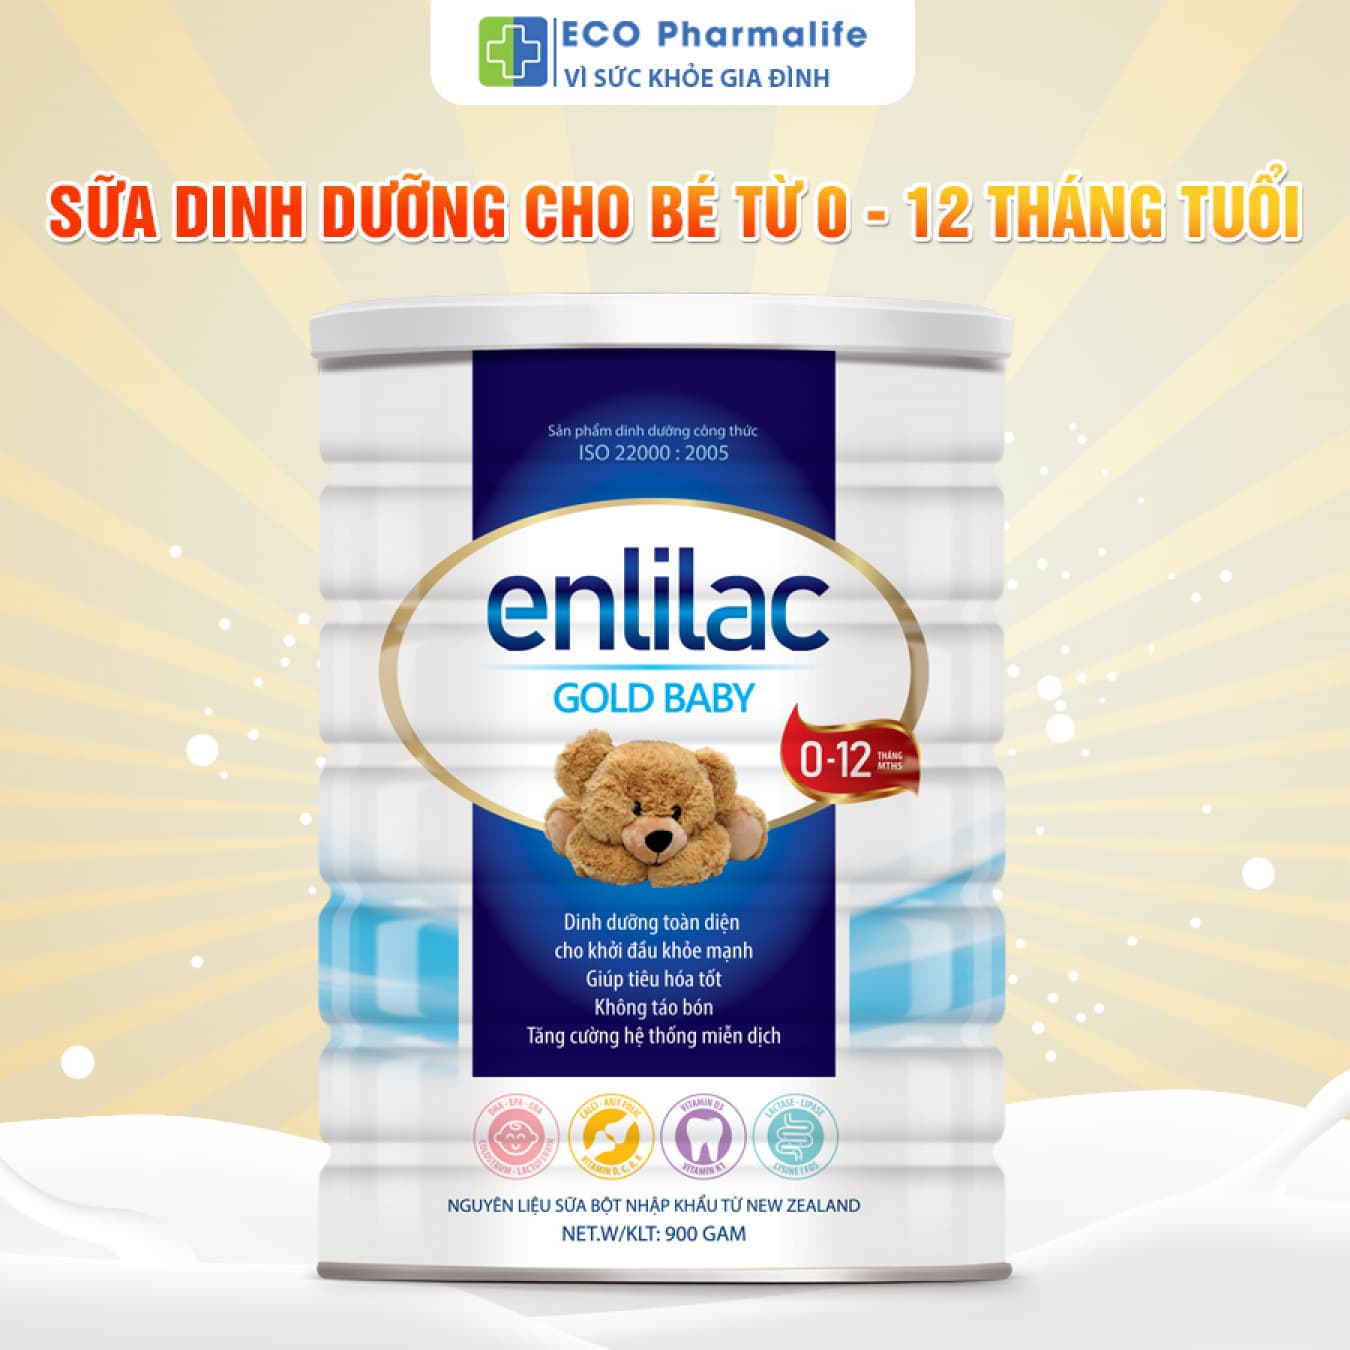 Enlilac Gold Baby dòng sữa phát triển toàn diện cho trẻ sơ sinh